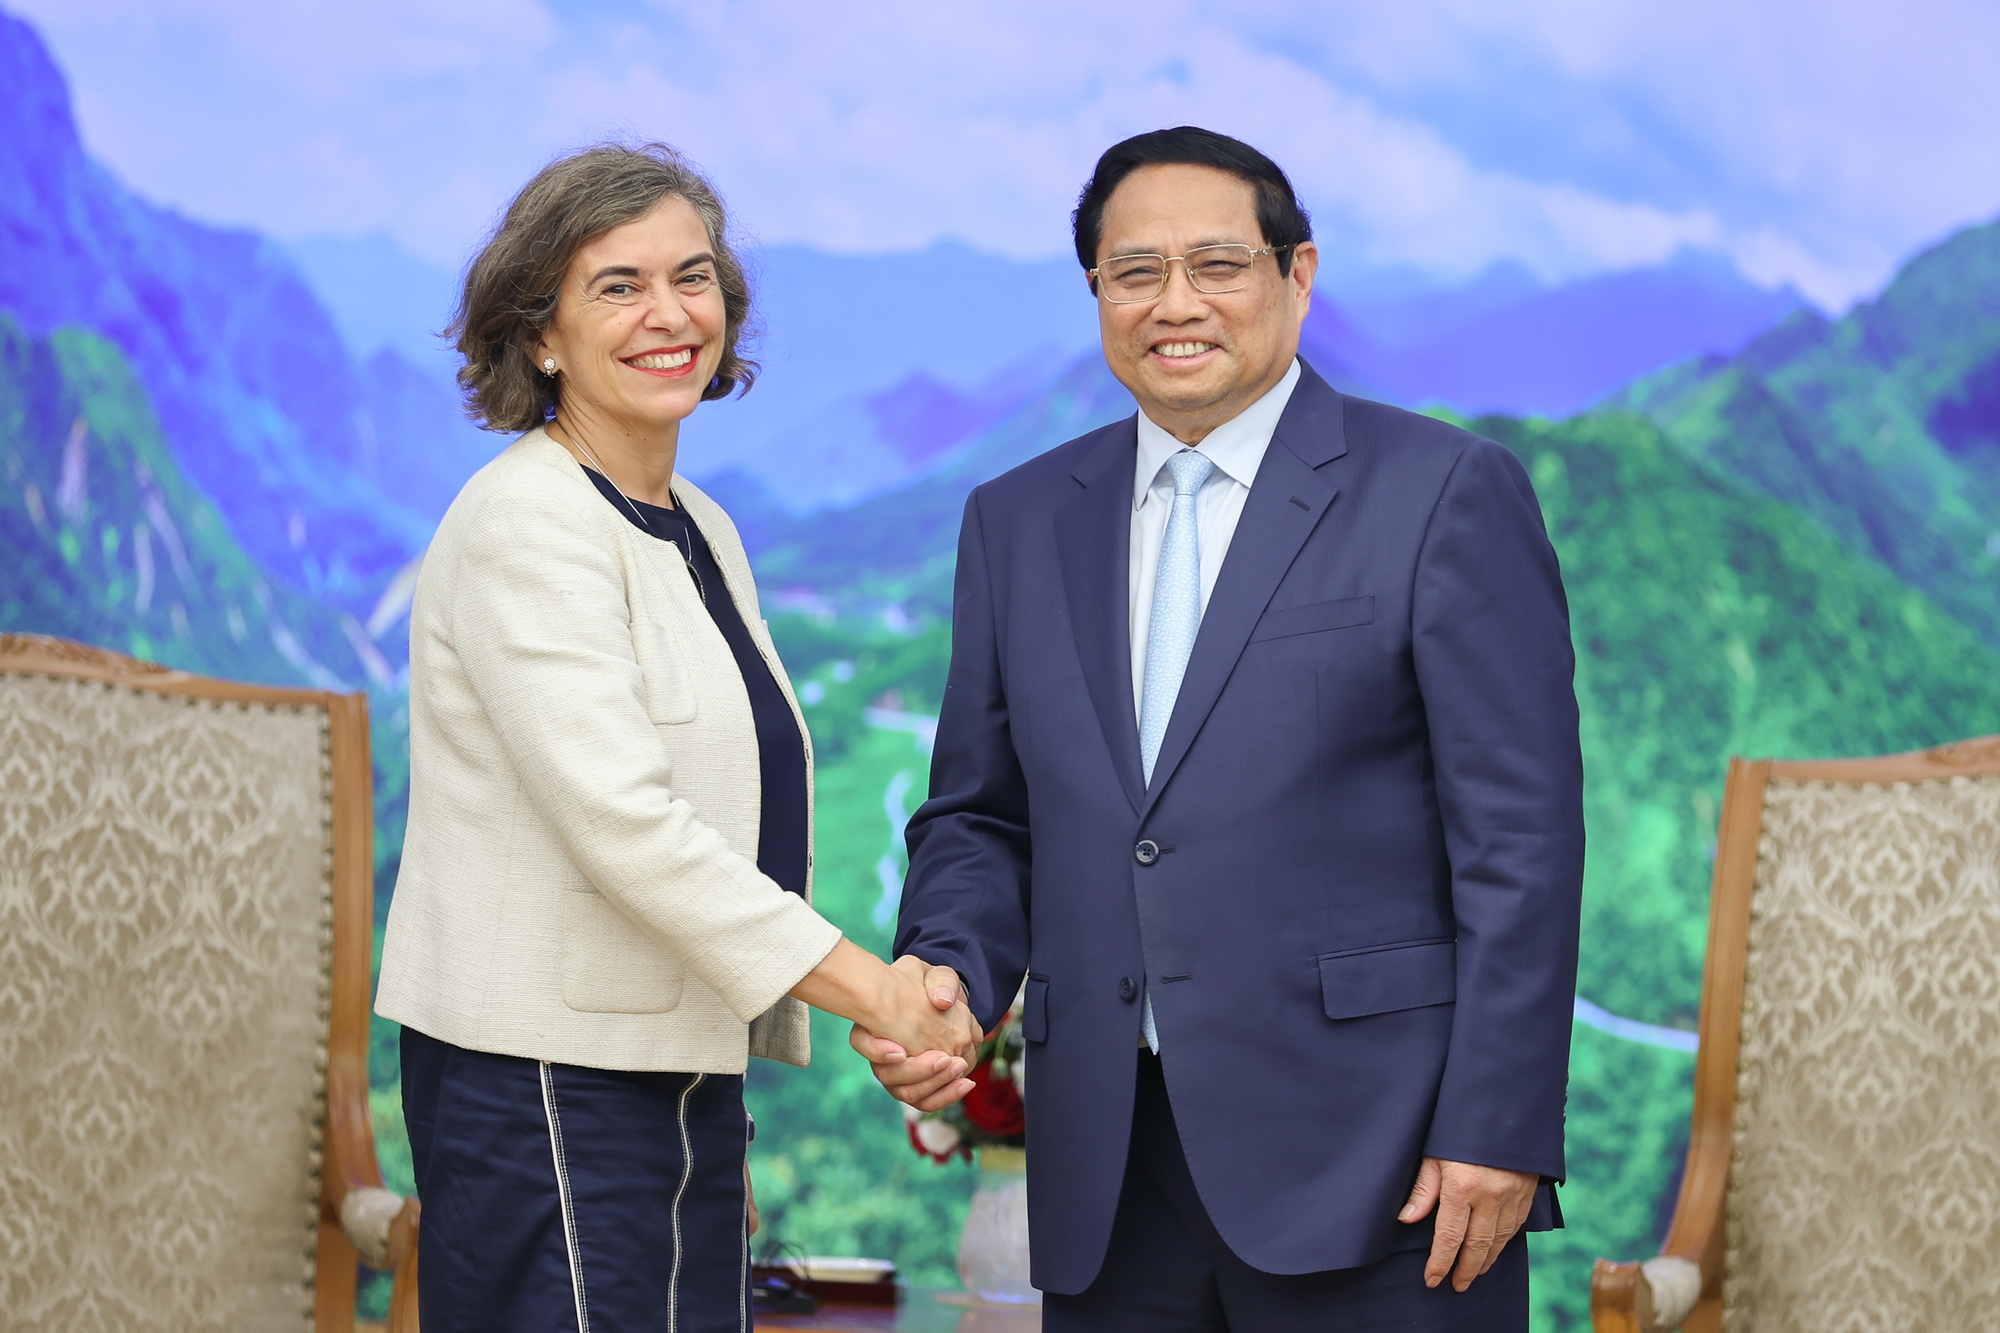 Thủ tướng Phạm Minh Chính tiếp Đại sứ Tây Ban Nha Carmen Cano de Lasala tới chào xã giao nhân dịp bắt đầu nhiệm kỳ tại Việt Nam - Ảnh: VGP/Nhật Bắc